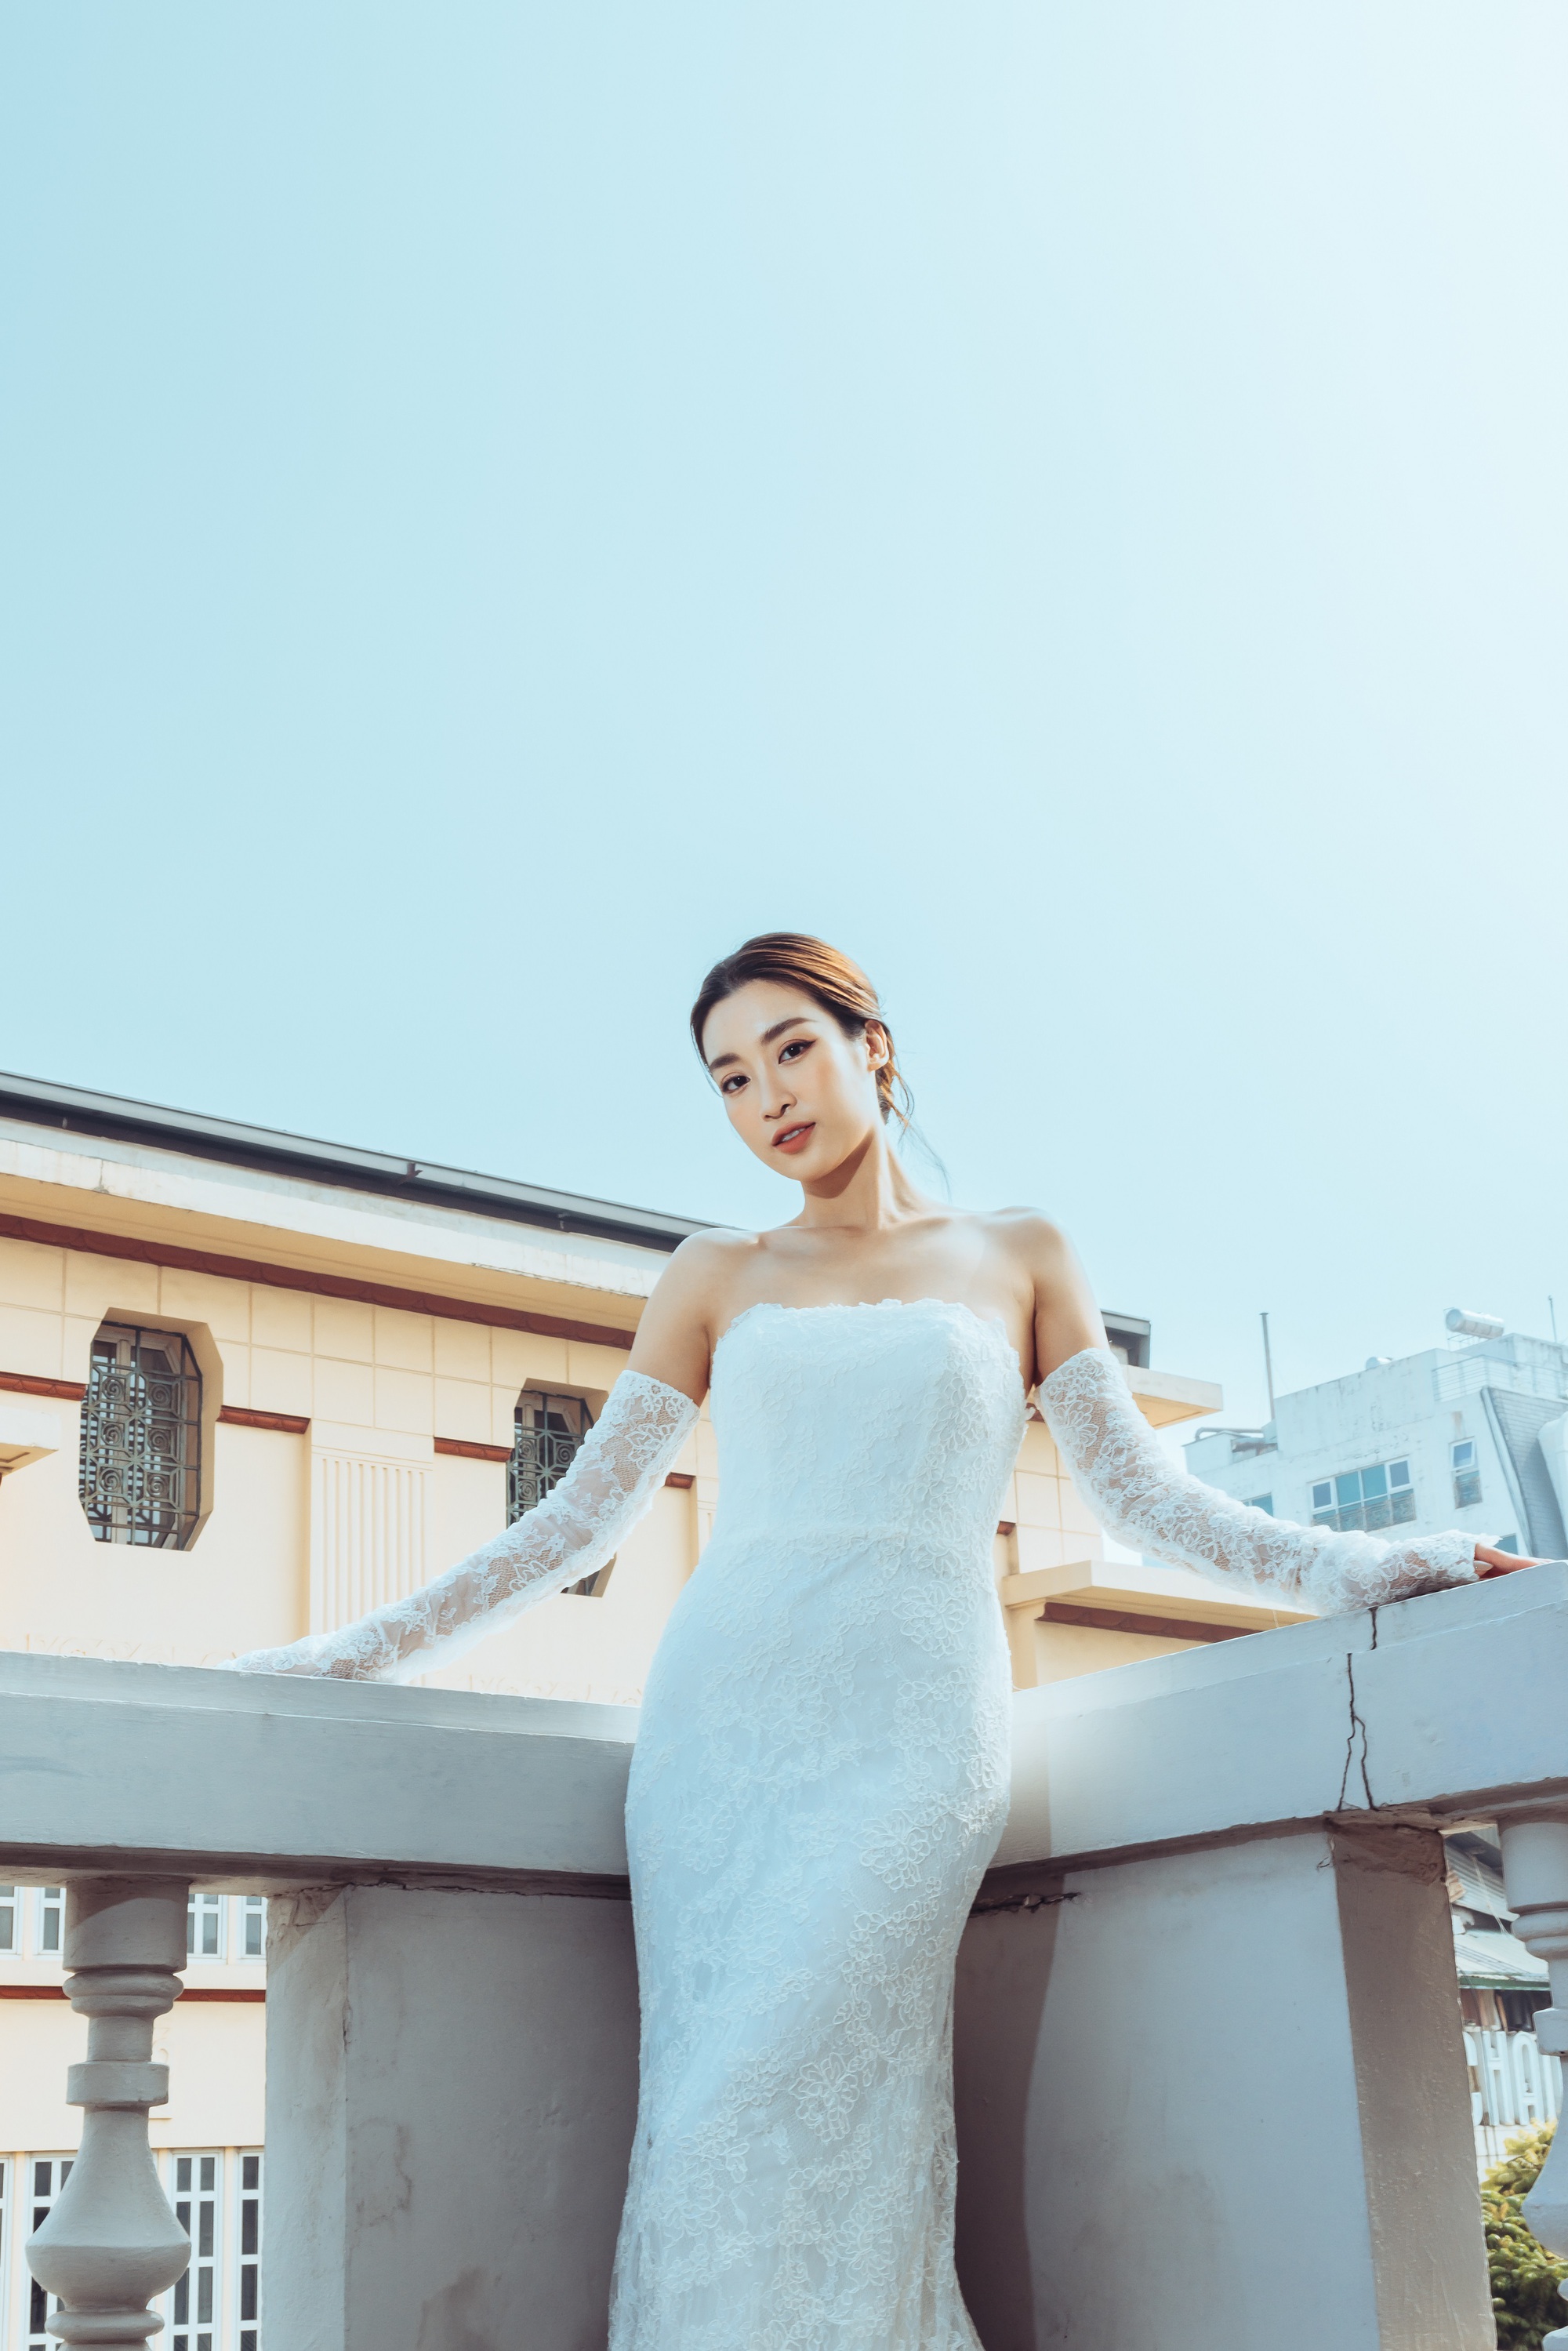 Hoa hậu Đỗ Mỹ Linh mặc váy cưới xinh đẹp khiến phụ nữ cũng phải rung động trước ngày lấy chồng - Ảnh 11.